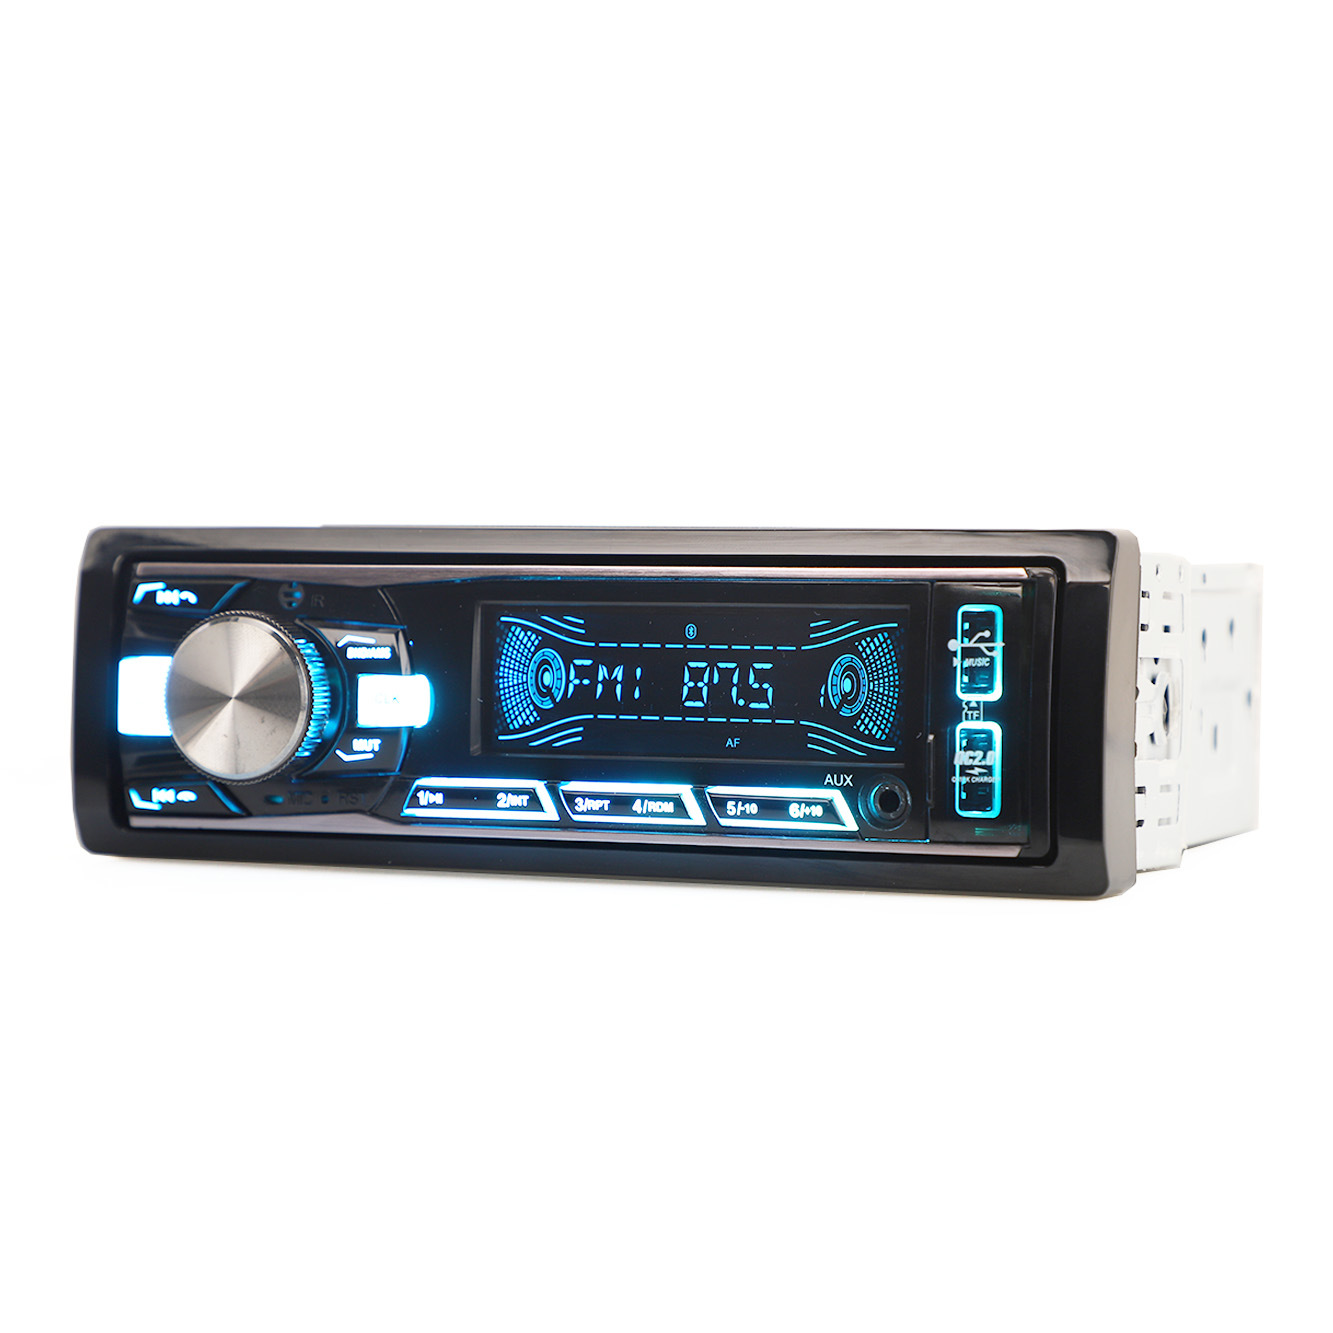 السيارات الصوت لوحة ثابتة مشغل MP3 FM الارسال الصوت سيارة ستيريو صوت السيارة اكسسوارات السيارات مشغل سيارة واحد DIN